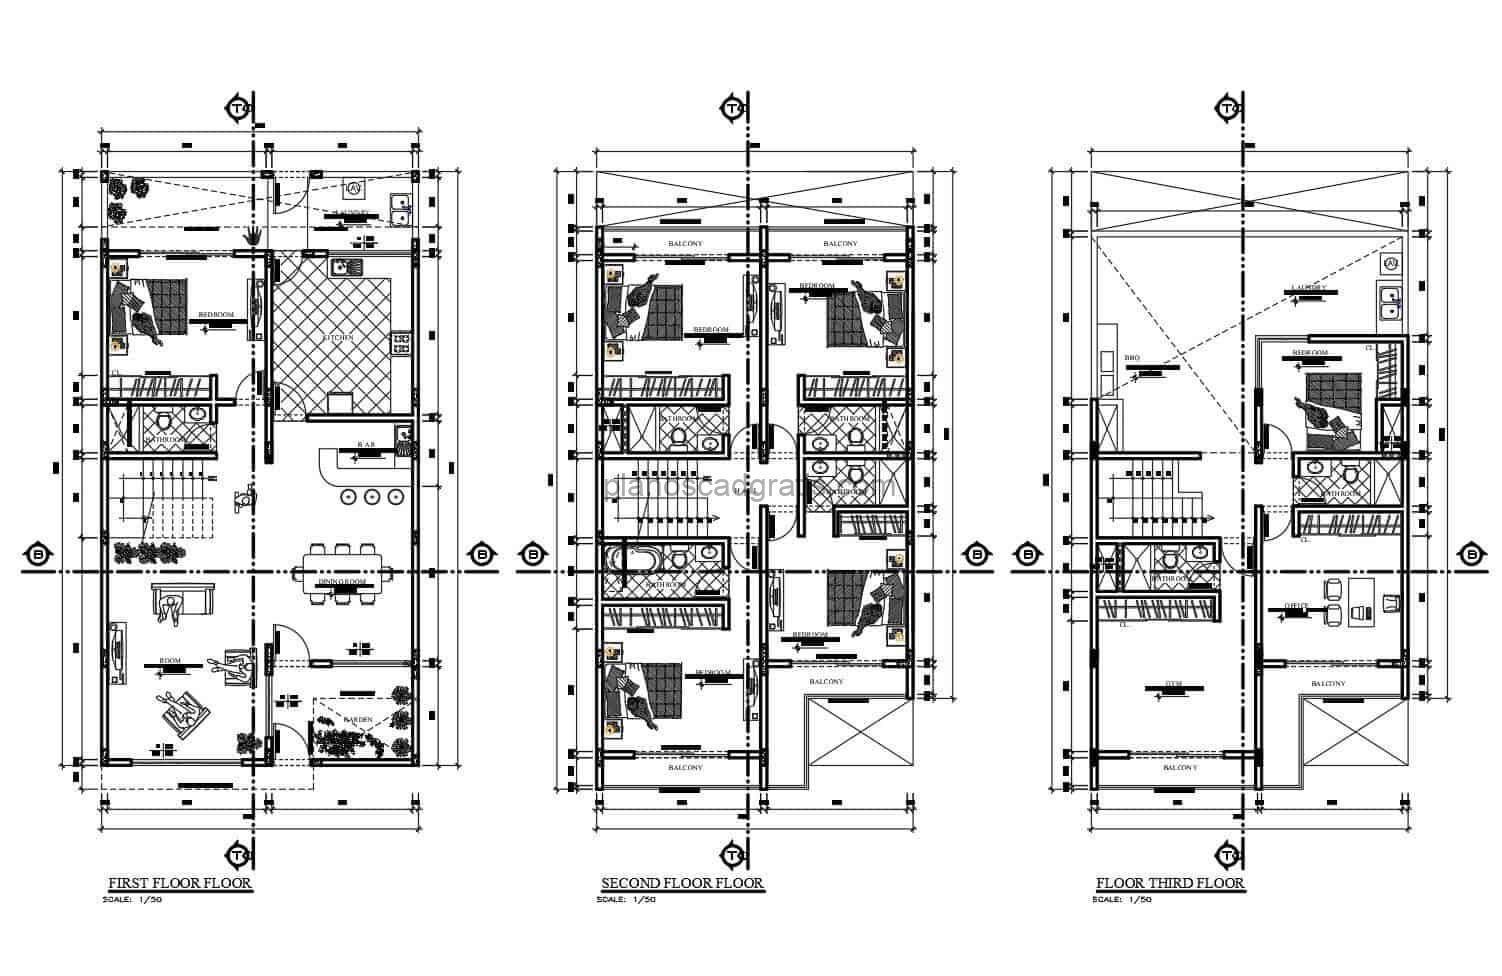 planos con dimensiones de casa de tres niveles con seis habitaciones amueblada con bloques de autocad, planos arquitectonicos con detalles constructivos, casa rectangular en dibujos 2d planos para descarga gratis